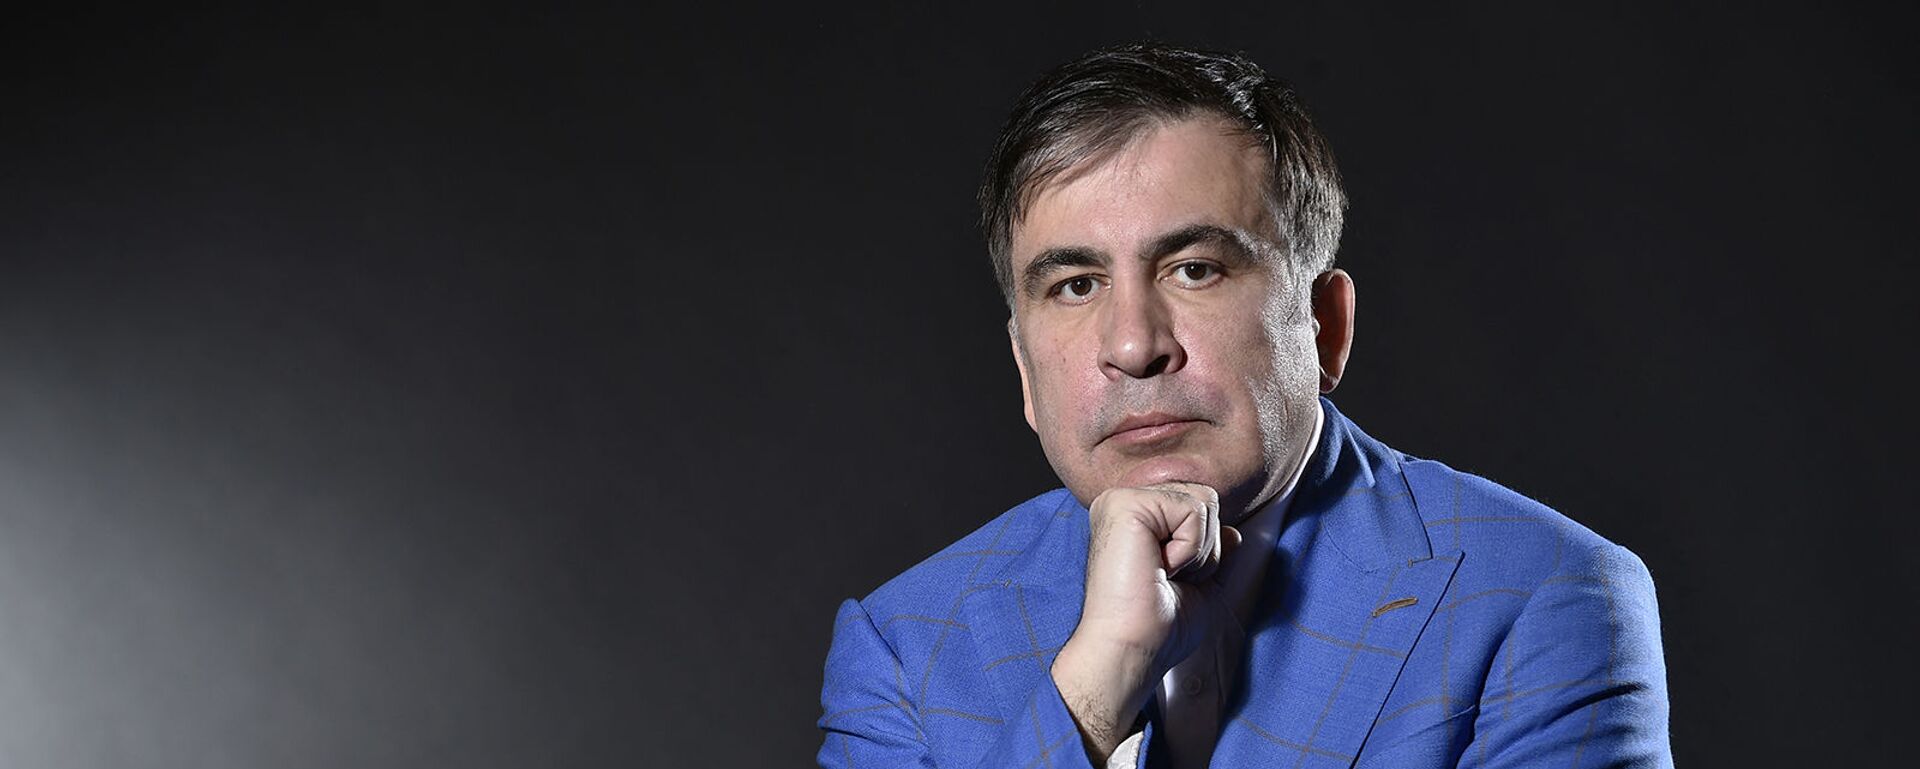 Бывший президент Грузии Михаил Саакашвили во время фотосессии (7 марта 2018). Амстердам - Sputnik Армения, 1920, 20.10.2021